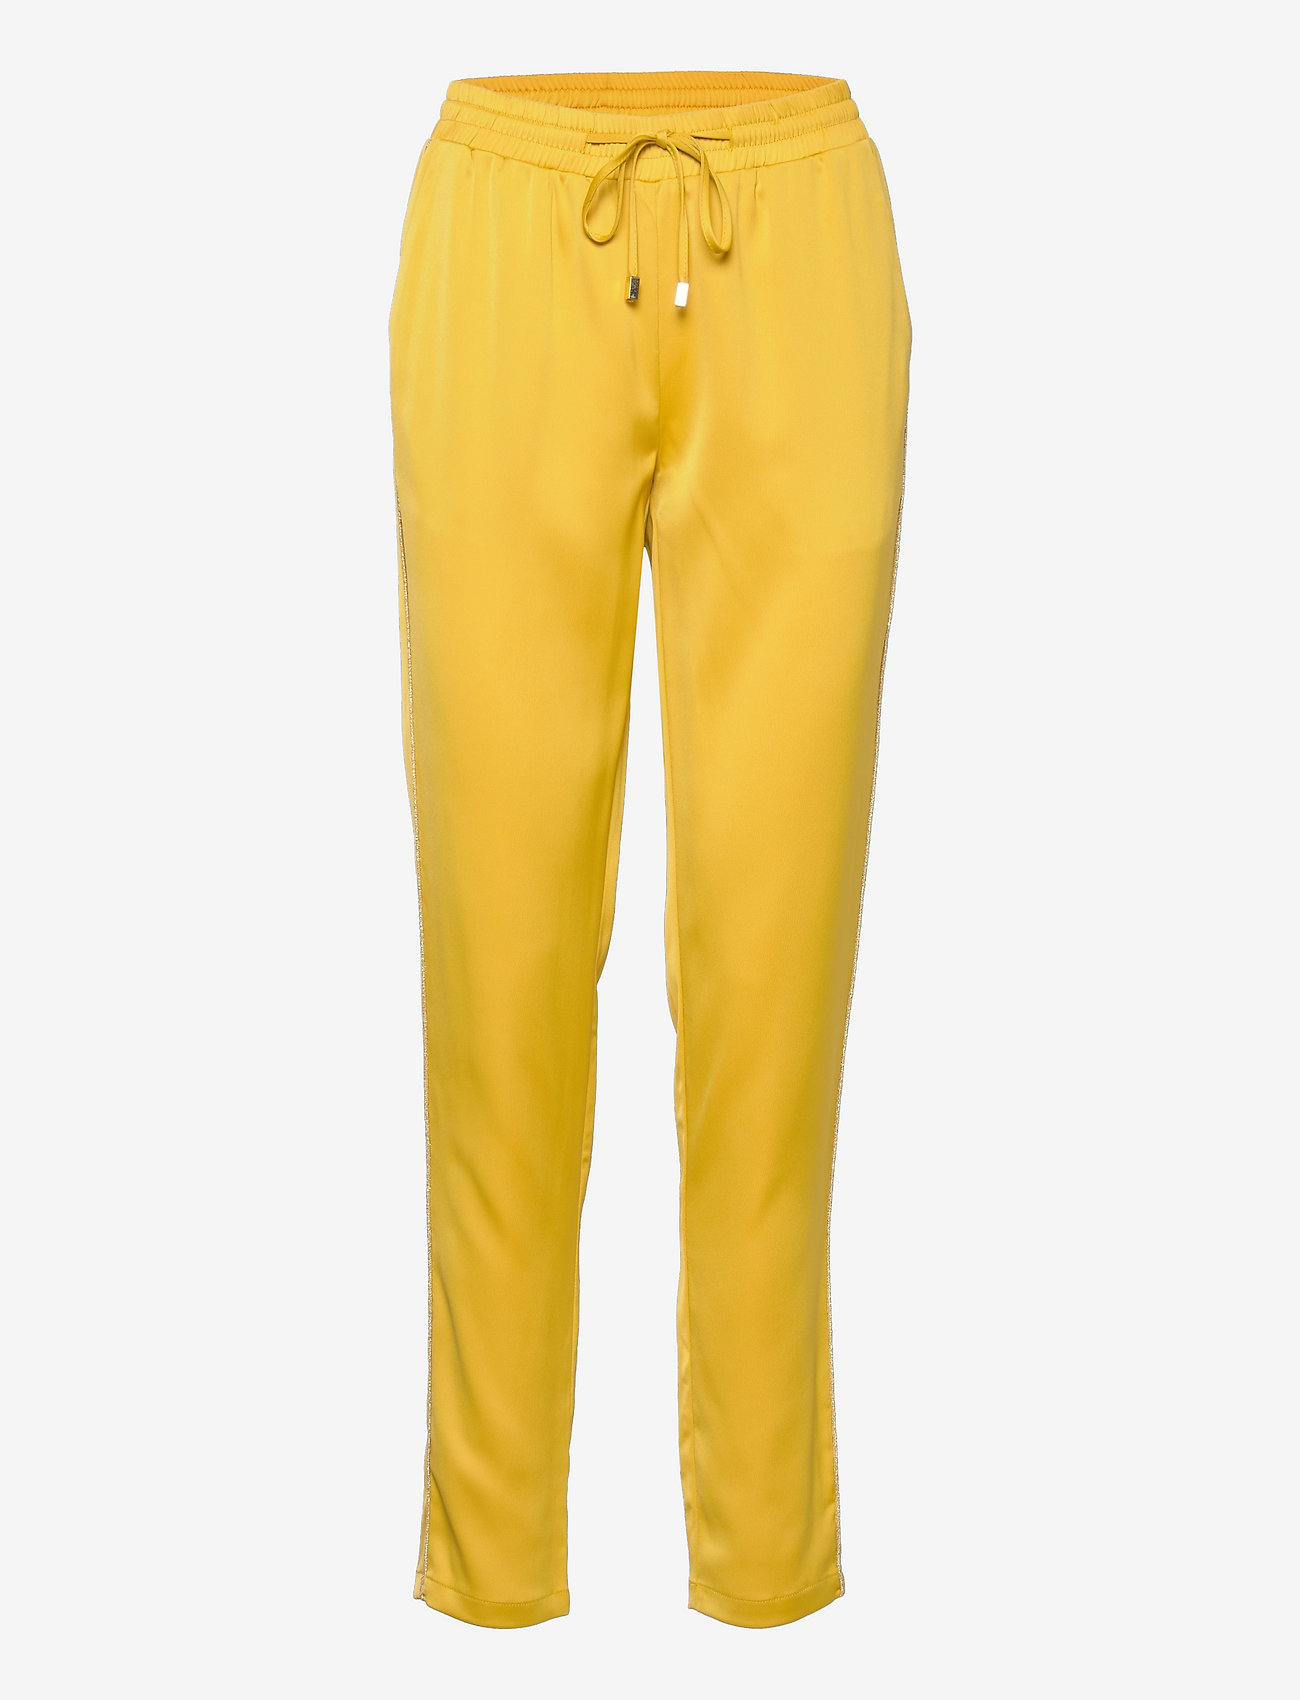 Sofie Schnoor - Pants - jogginghosen - yellow - 0